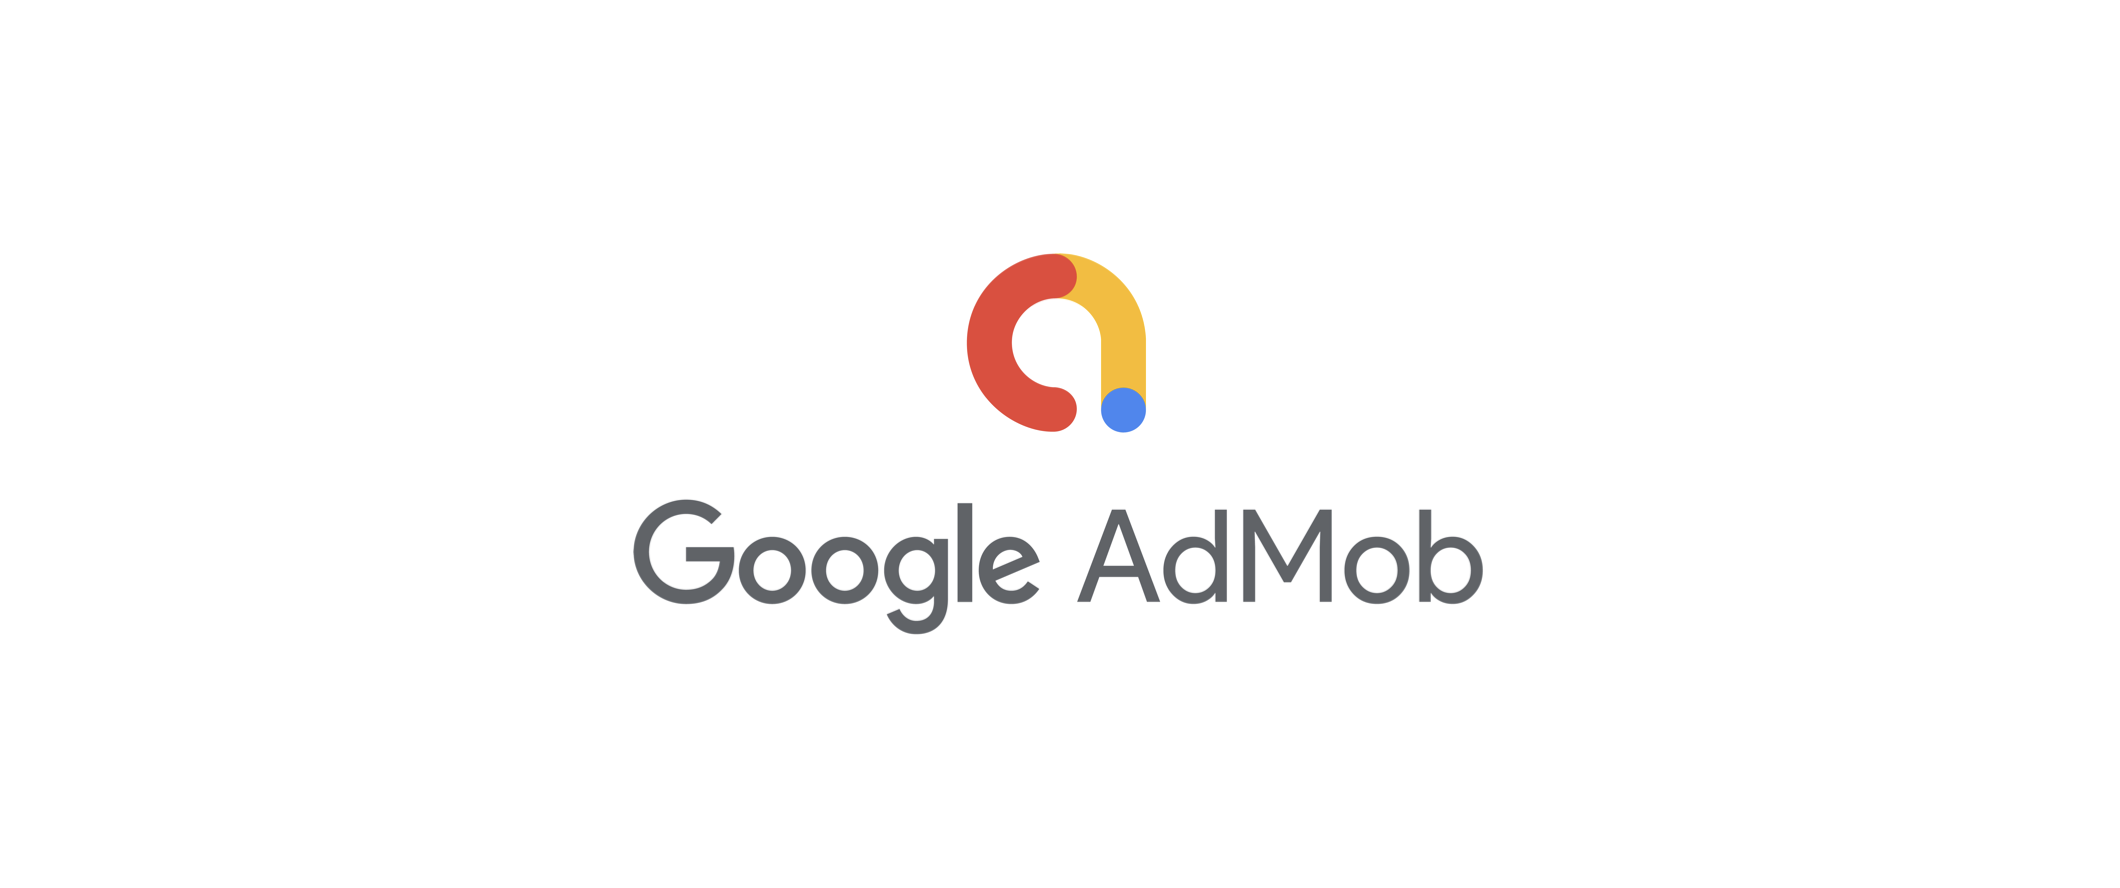 Google AdMob更新广告数据分析功能 列出多种内置数据